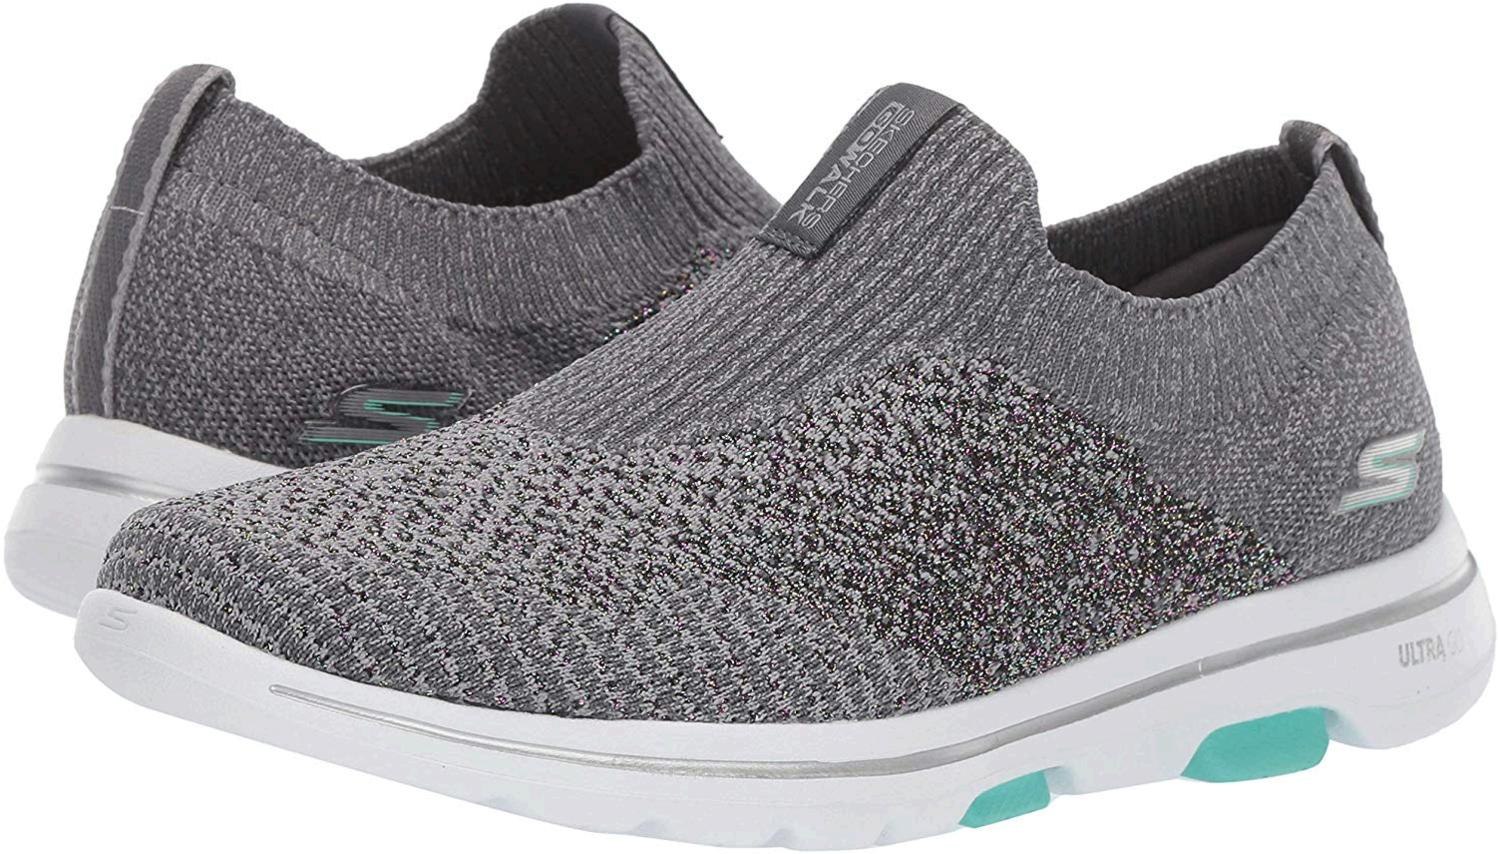 Skechers Women's Go Walk 5-Enlighten Sneaker, Grey, Size 7.0 md7k | eBay